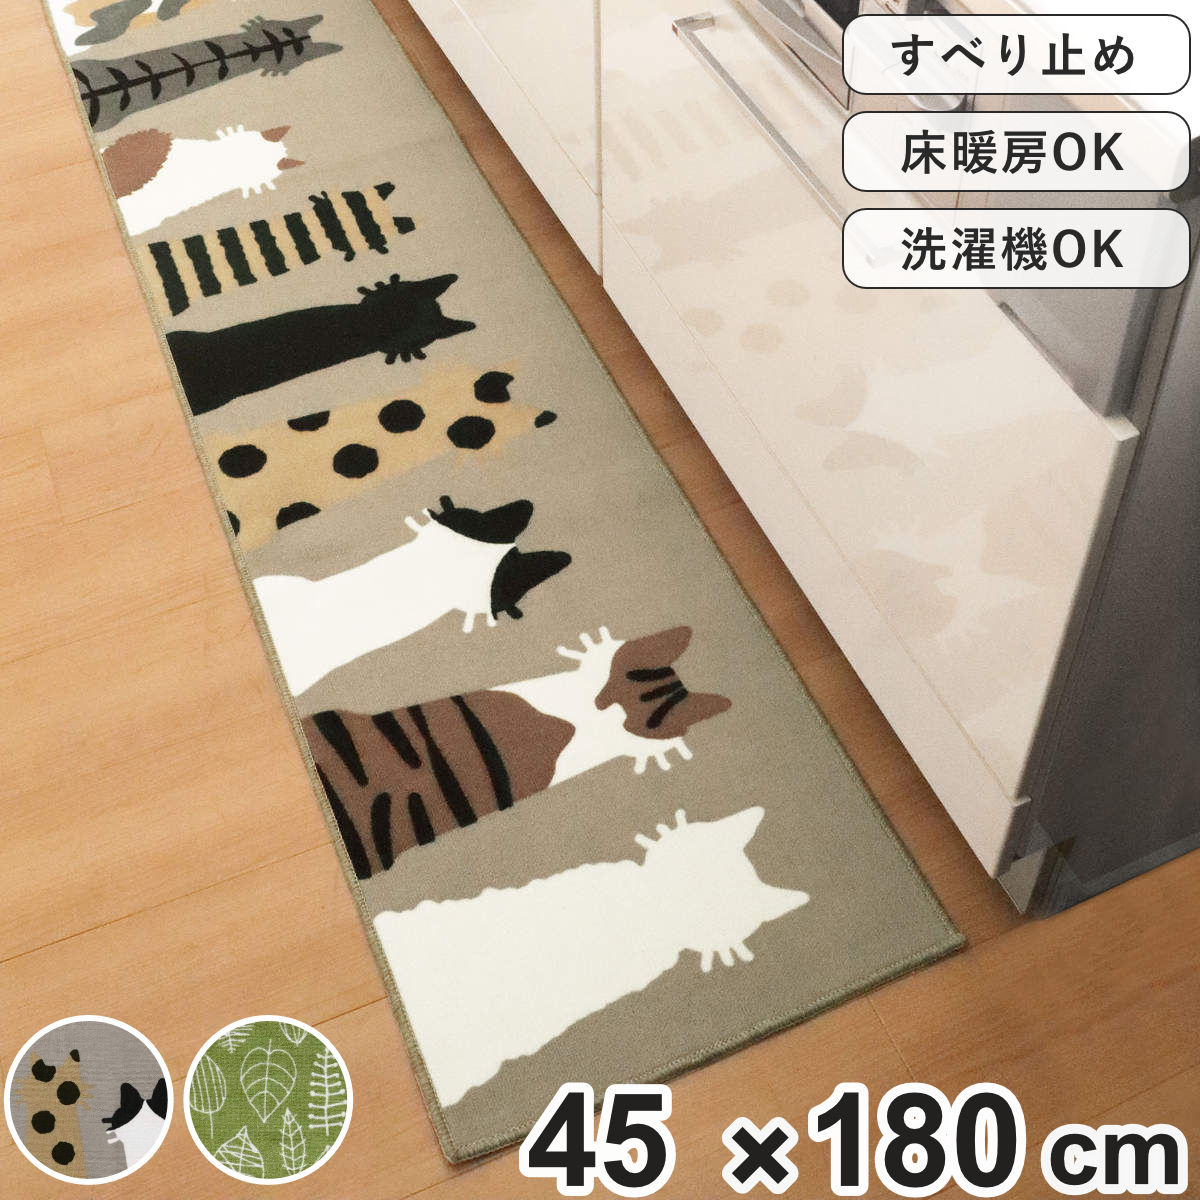 キッチンマット 45×180cm リーフ柄 ネコ柄